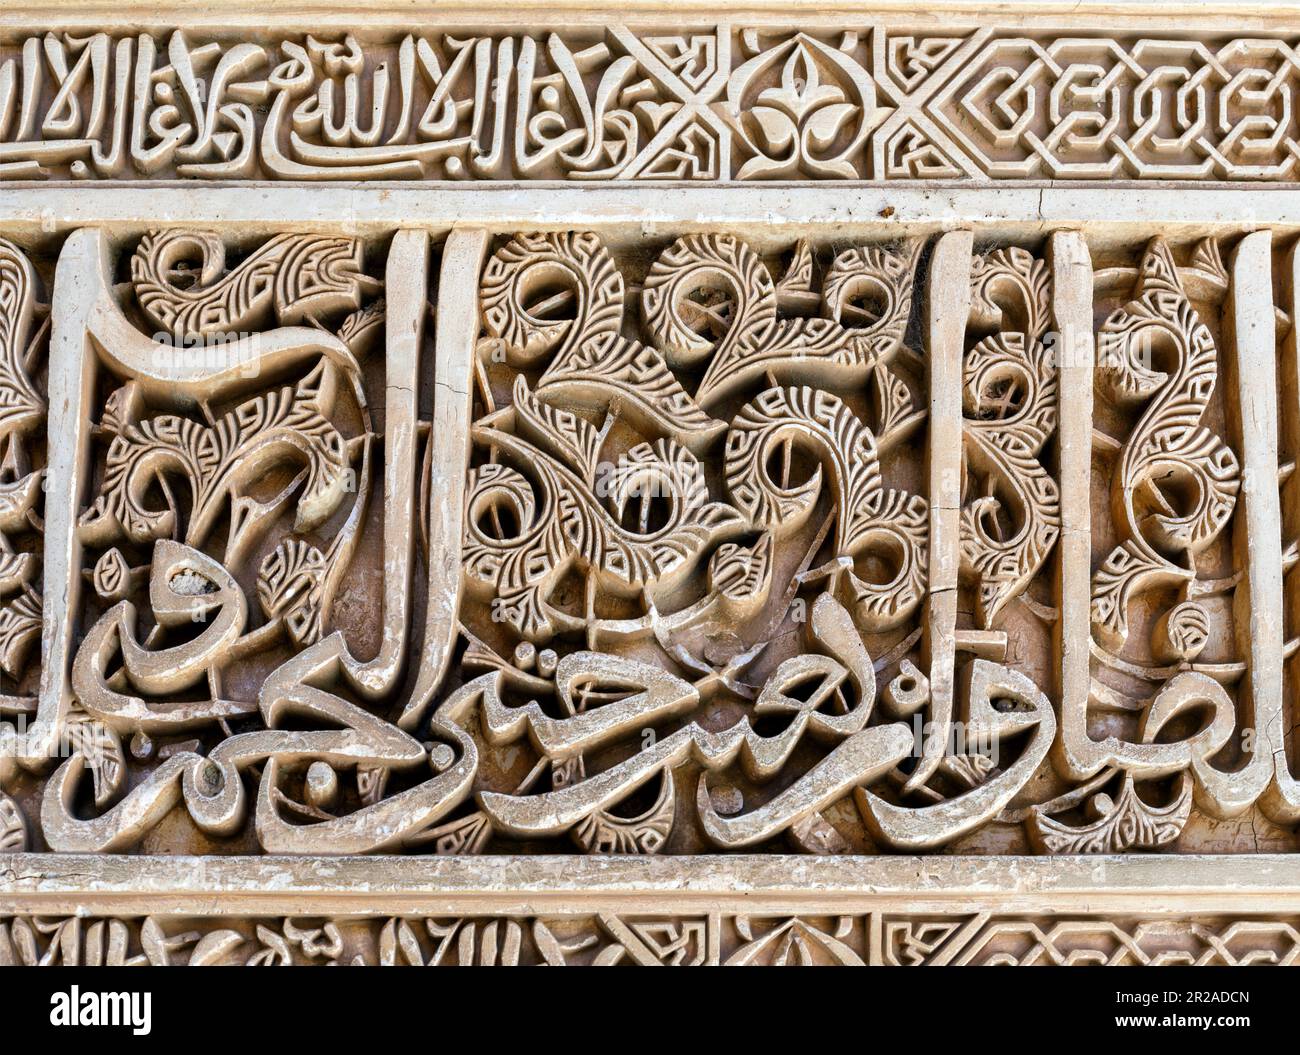 Spanien, Andalusien, Granada, Alhambra, Generallife, Sommerpalast, Details islamischer Kalligraphie, maurischer Einfluss Stockfoto